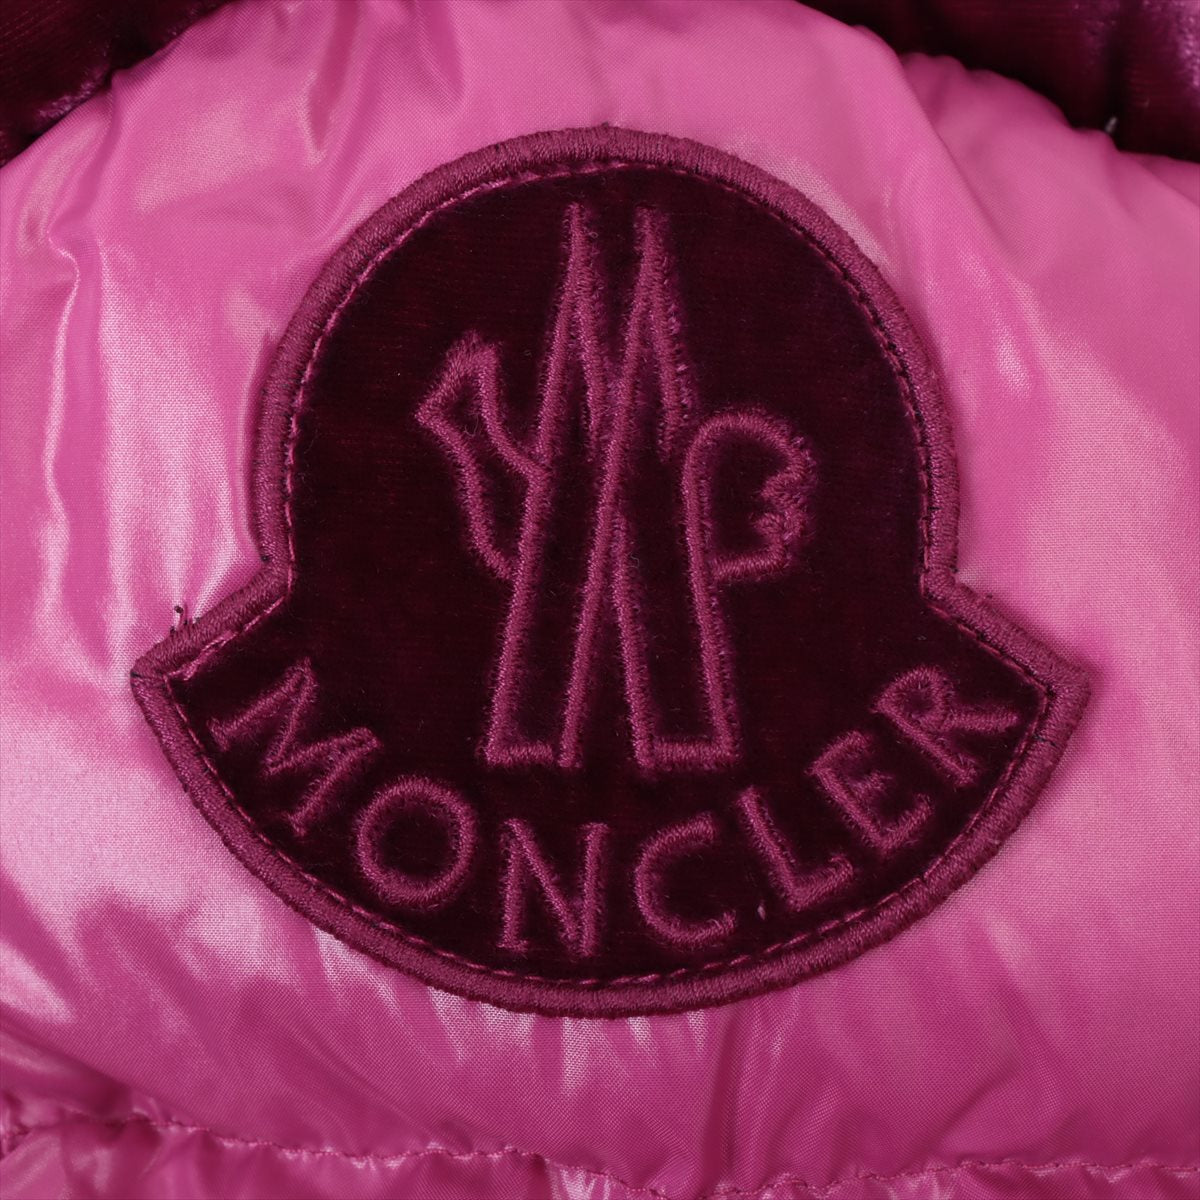 Moncler CHOUETTE 19-year Rayon * Naylon Down jacket 8anni 130cm Kids Pink  Detachable hood